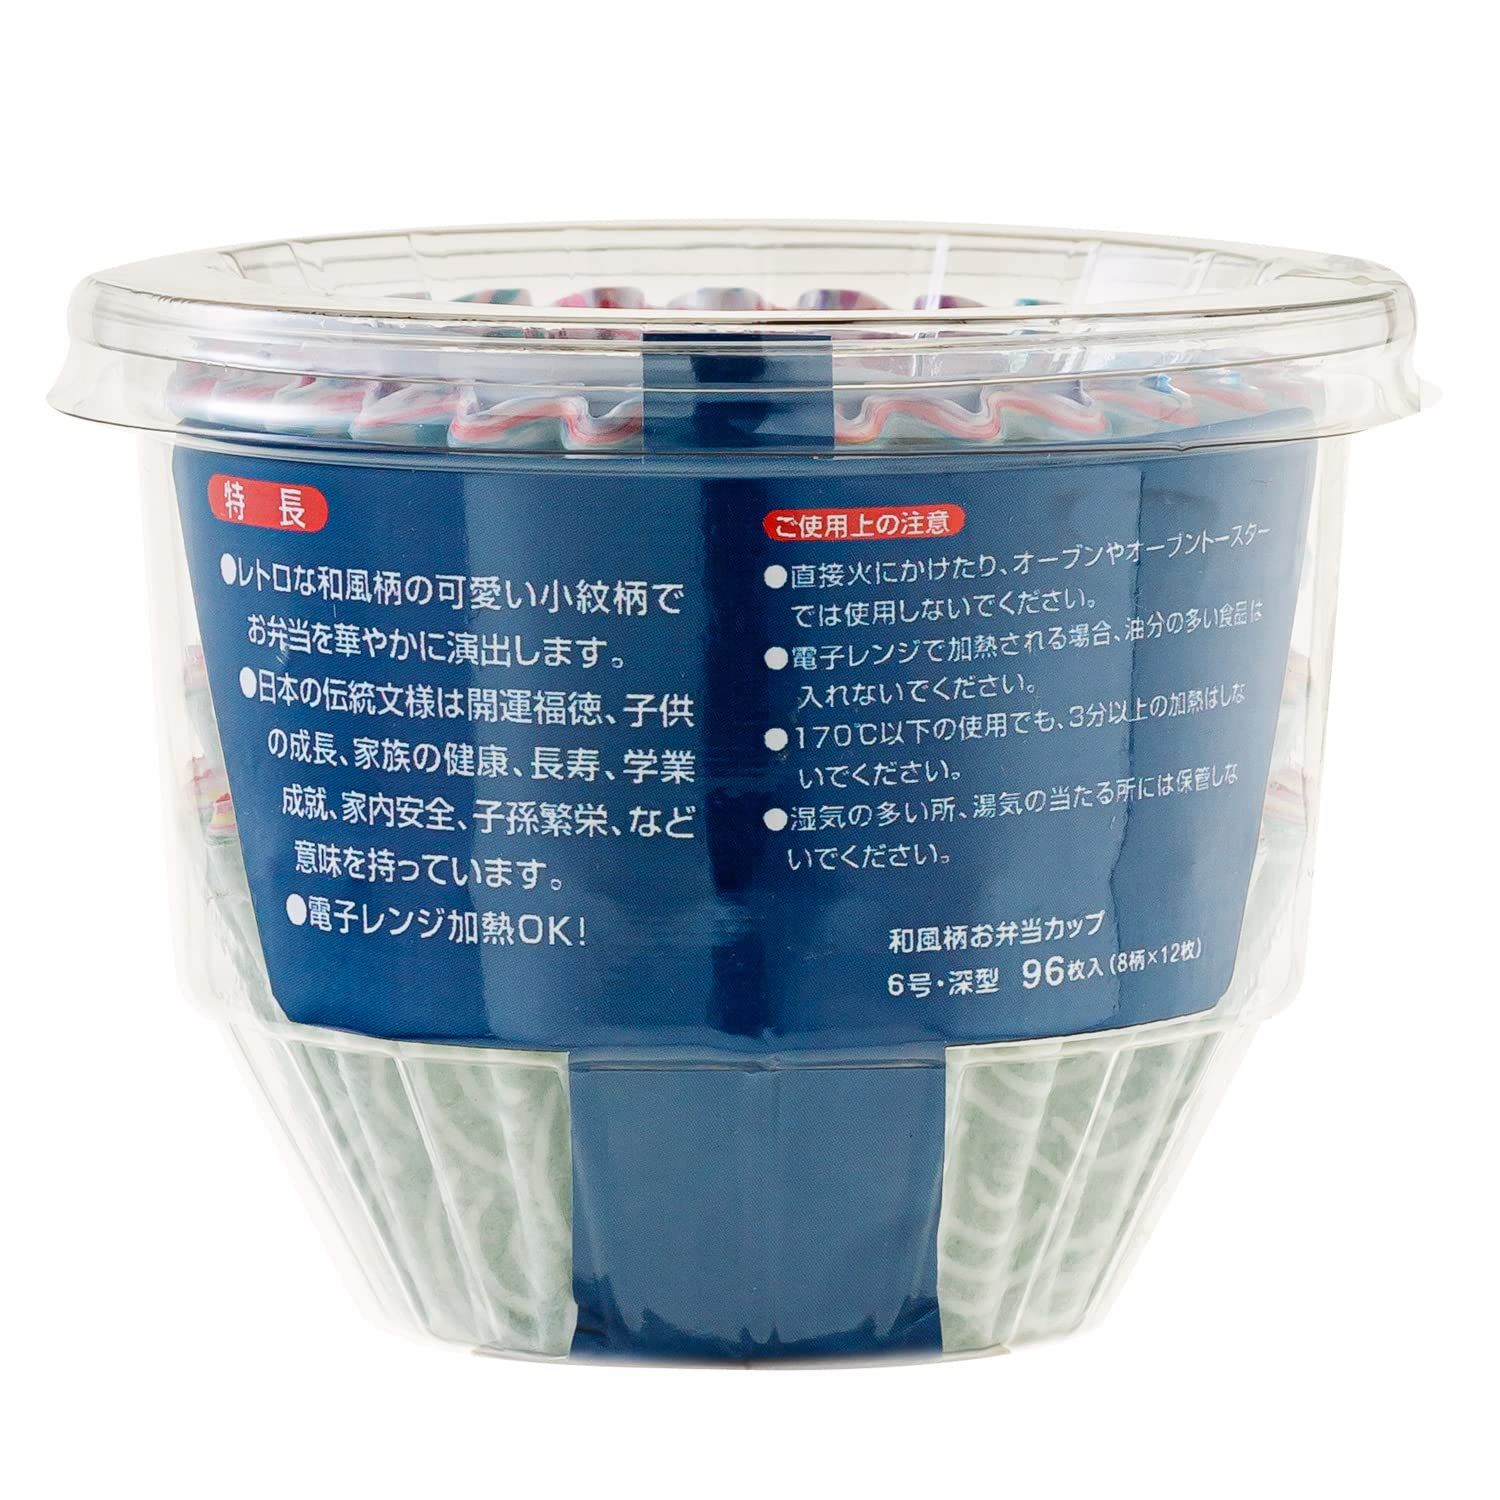 1年保証』 アルテム おかずカップ お弁当カップ 5号 深型 和風柄 96枚入 8柄×12枚 電子レンジ対応 日本製 